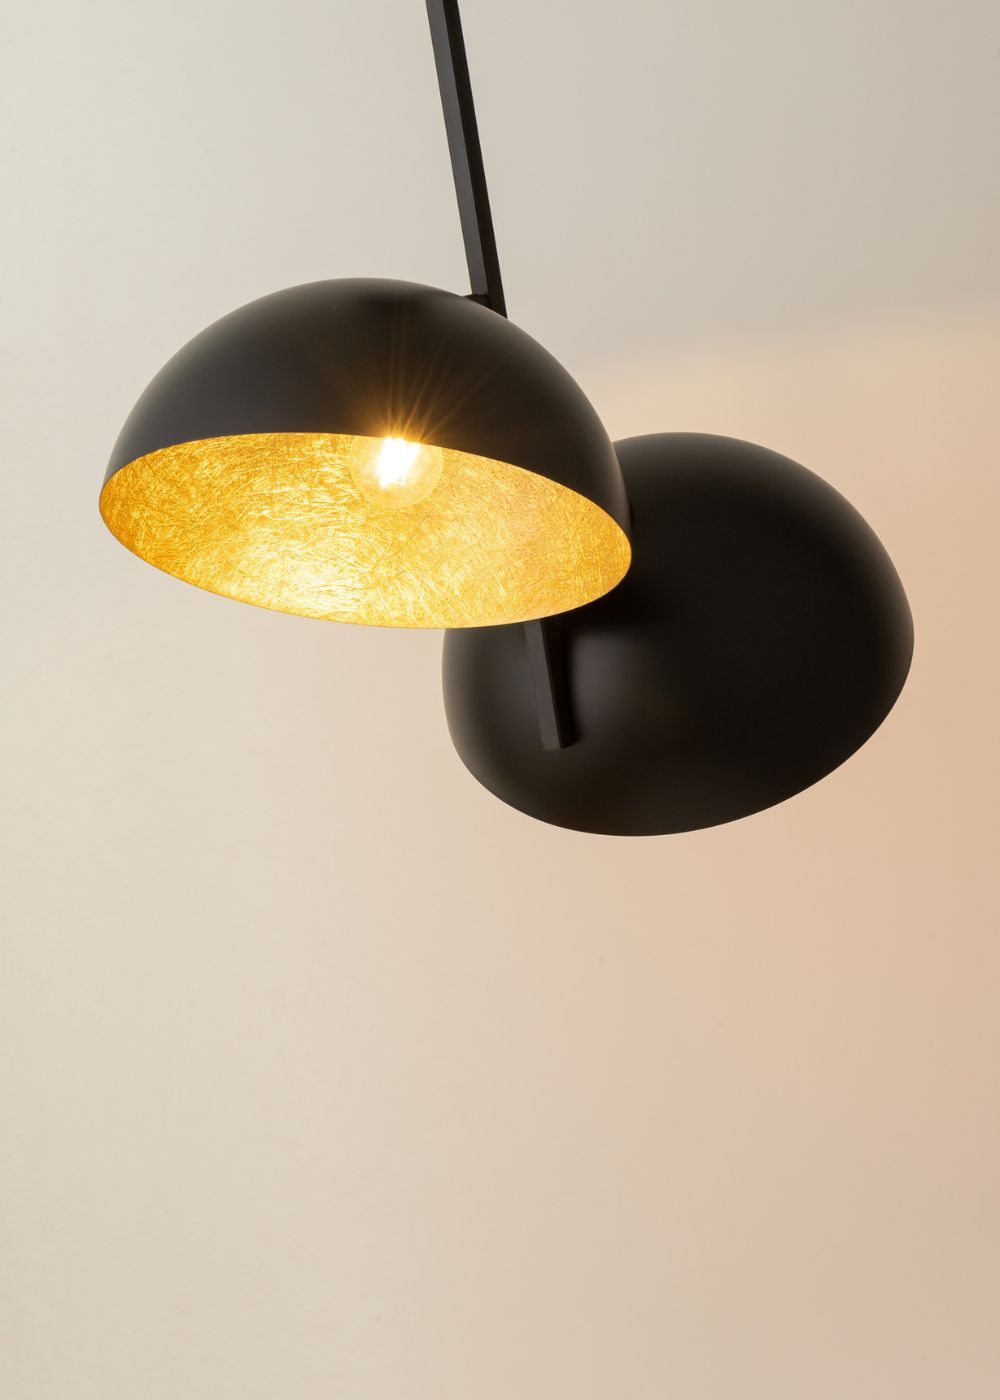 Metall Deckenlampe Loft Gold stylisch E27 Ø90 cm rund